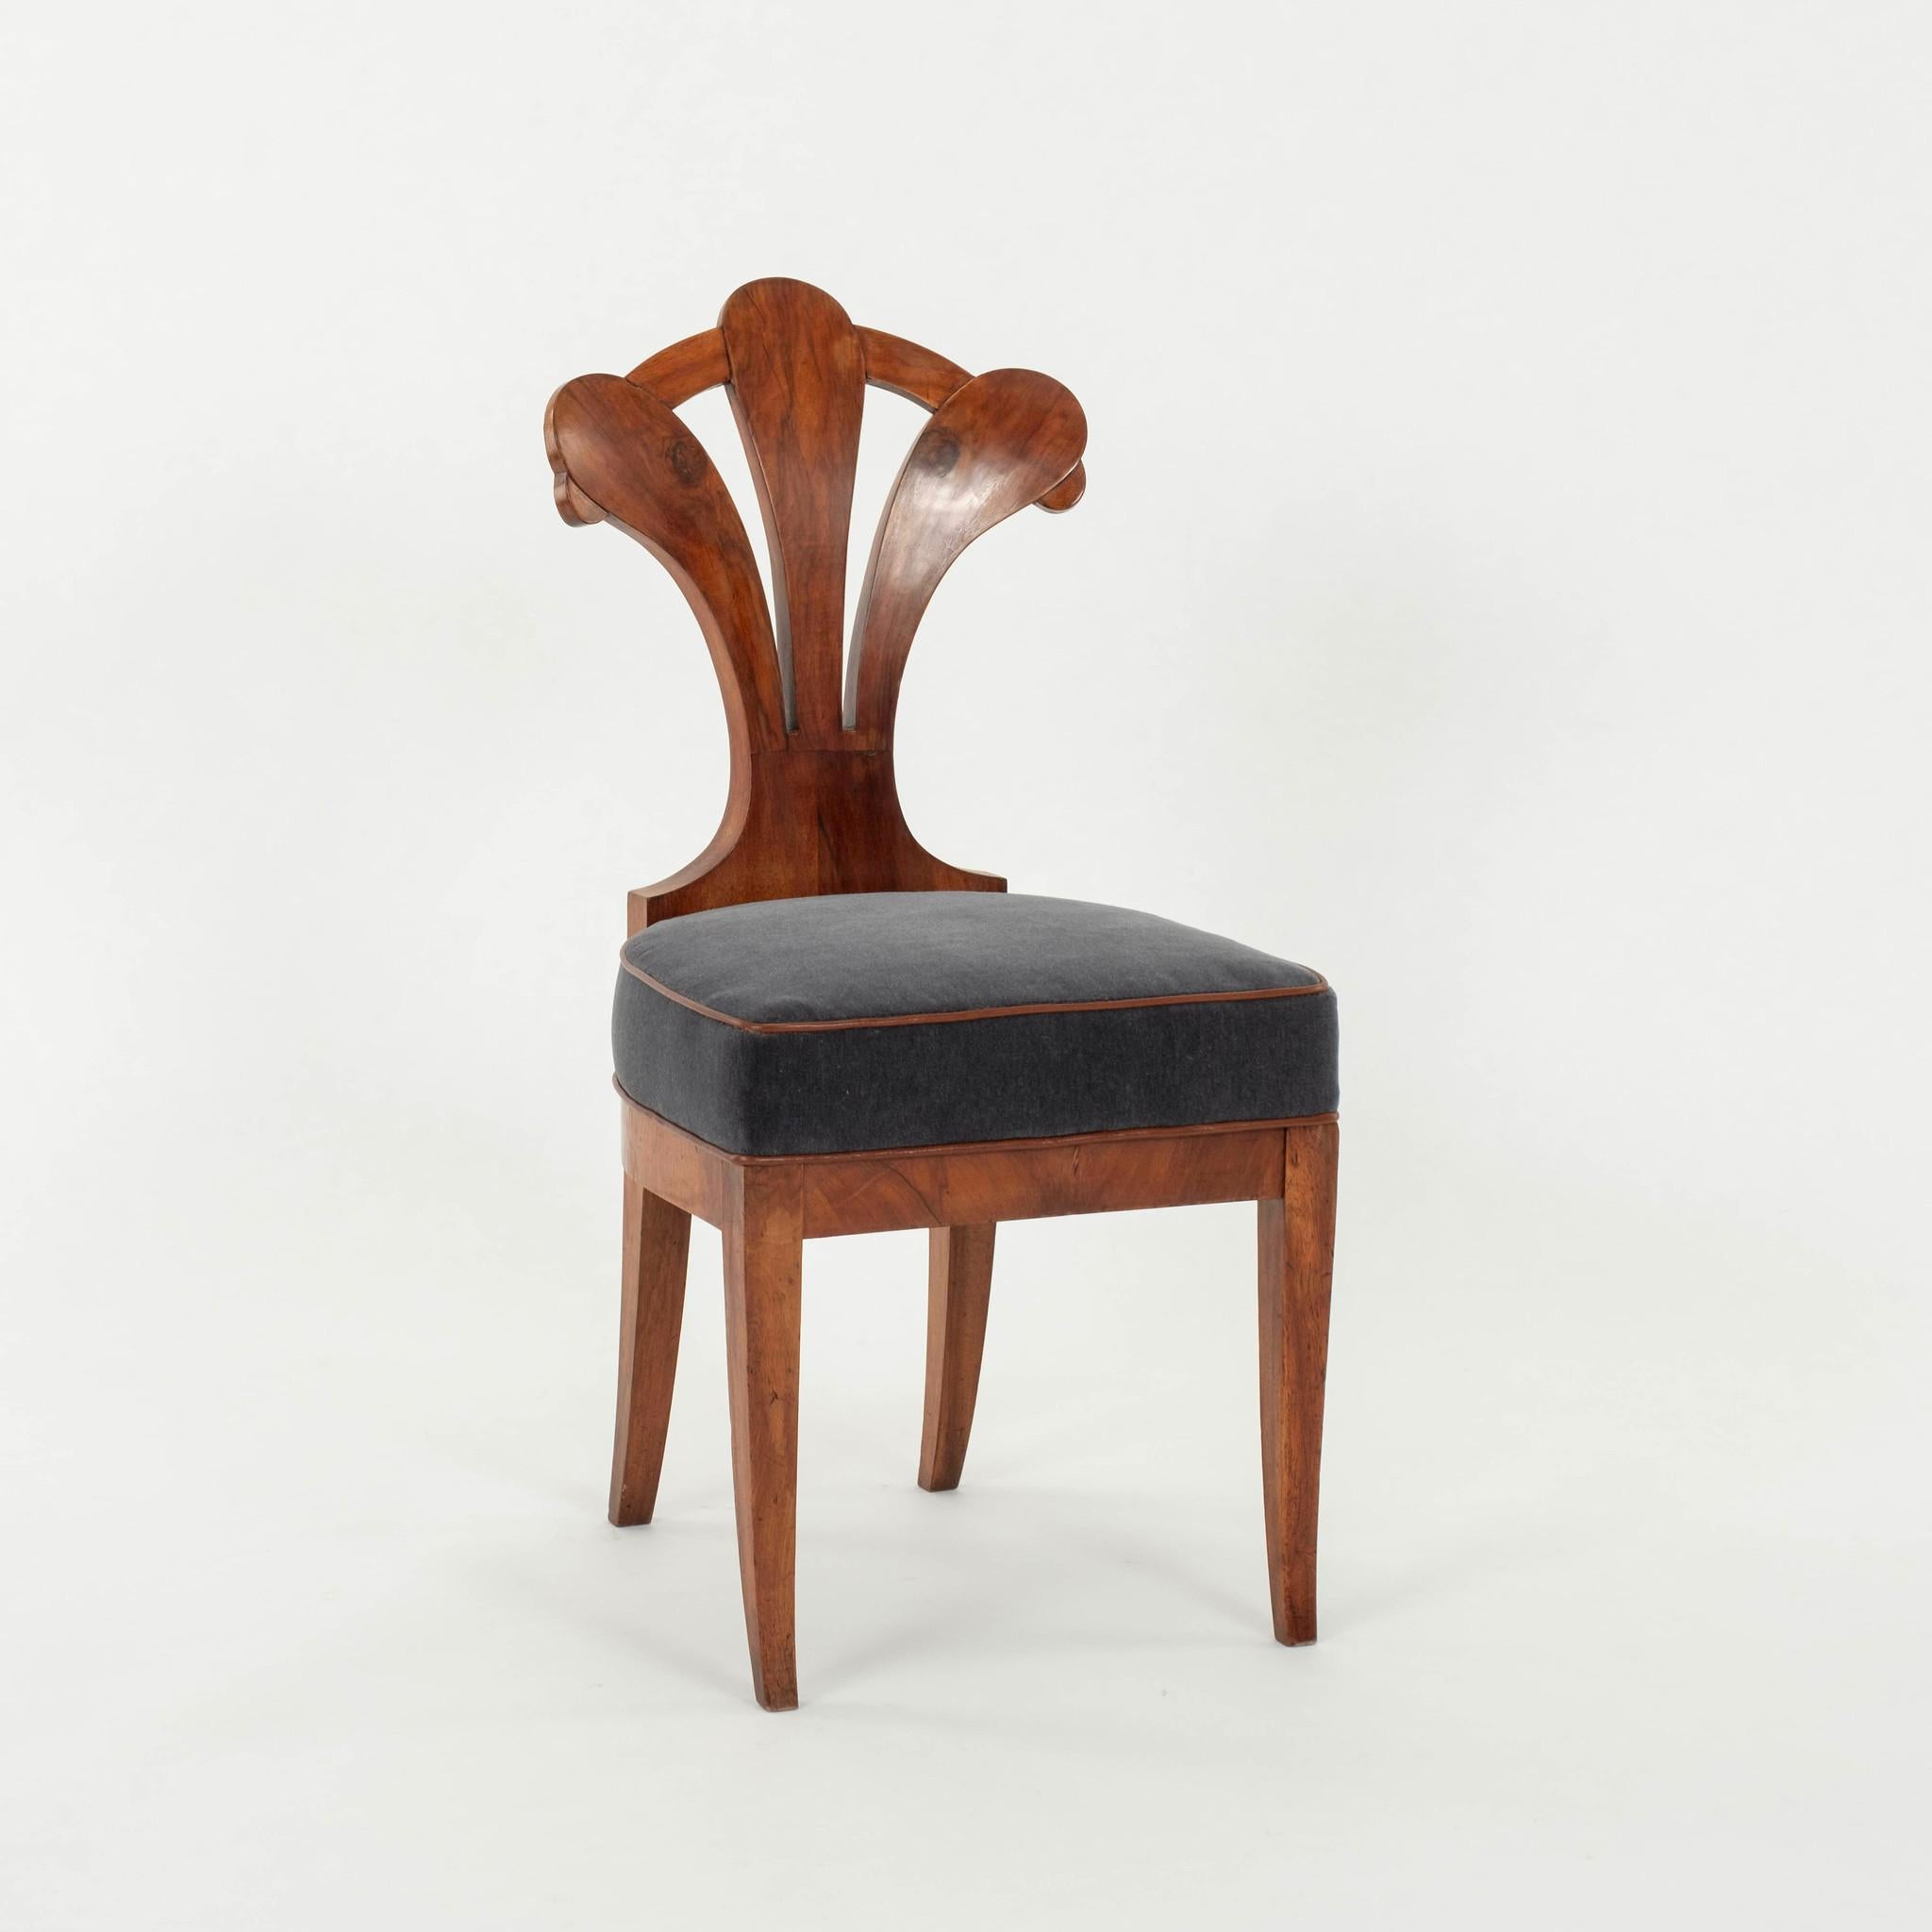 Schwedischer Biedermeier-Stuhl aus dem frühen 19. Jahrhundert, schöner Hartholzrahmen, neu gepolsterter Sitz mit blau-grauem Mohair und cognacfarbenem Lederrahmen.